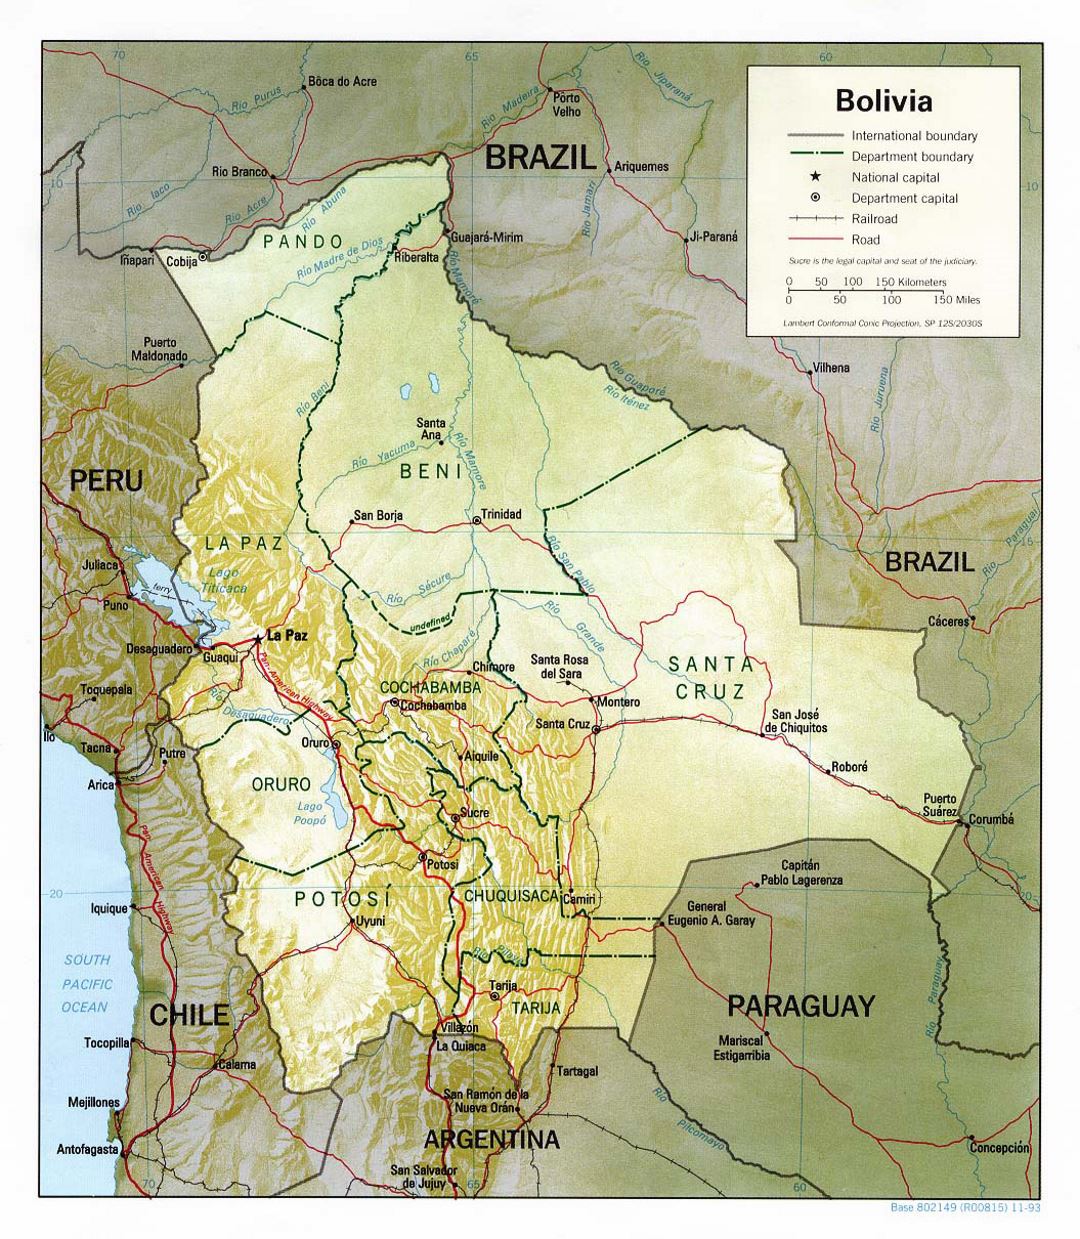 Detallado mapa político y administrativo de Bolivia con socorro, carreteras y principales ciudades - 1993